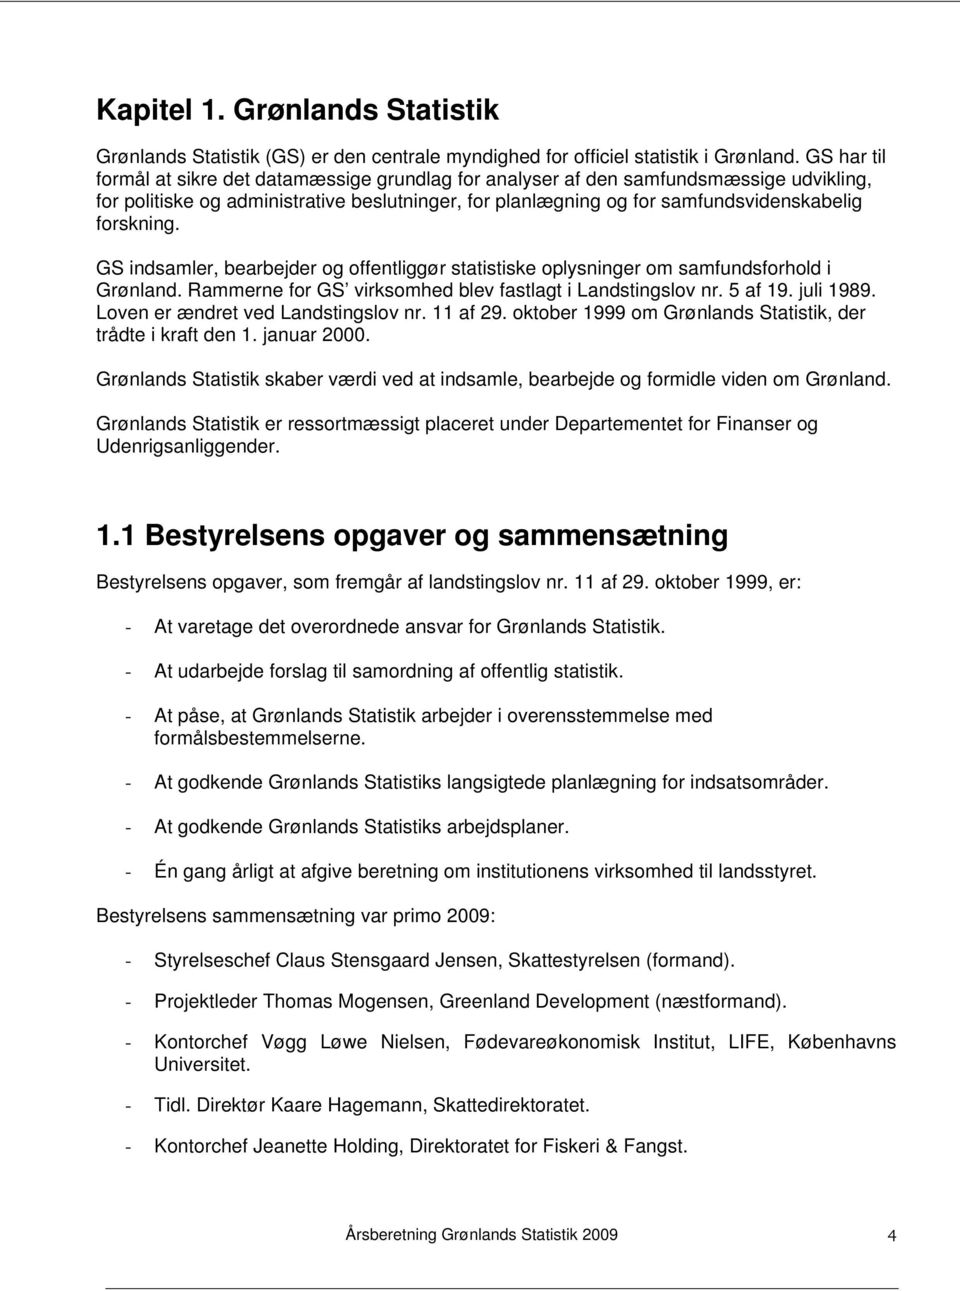 GS indsamler, bearbejder og offentliggør statistiske oplysninger om samfundsforhold i Grønland. Rammerne for GS virksomhed blev fastlagt i Landstingslov nr. 5 af 19. juli 1989.